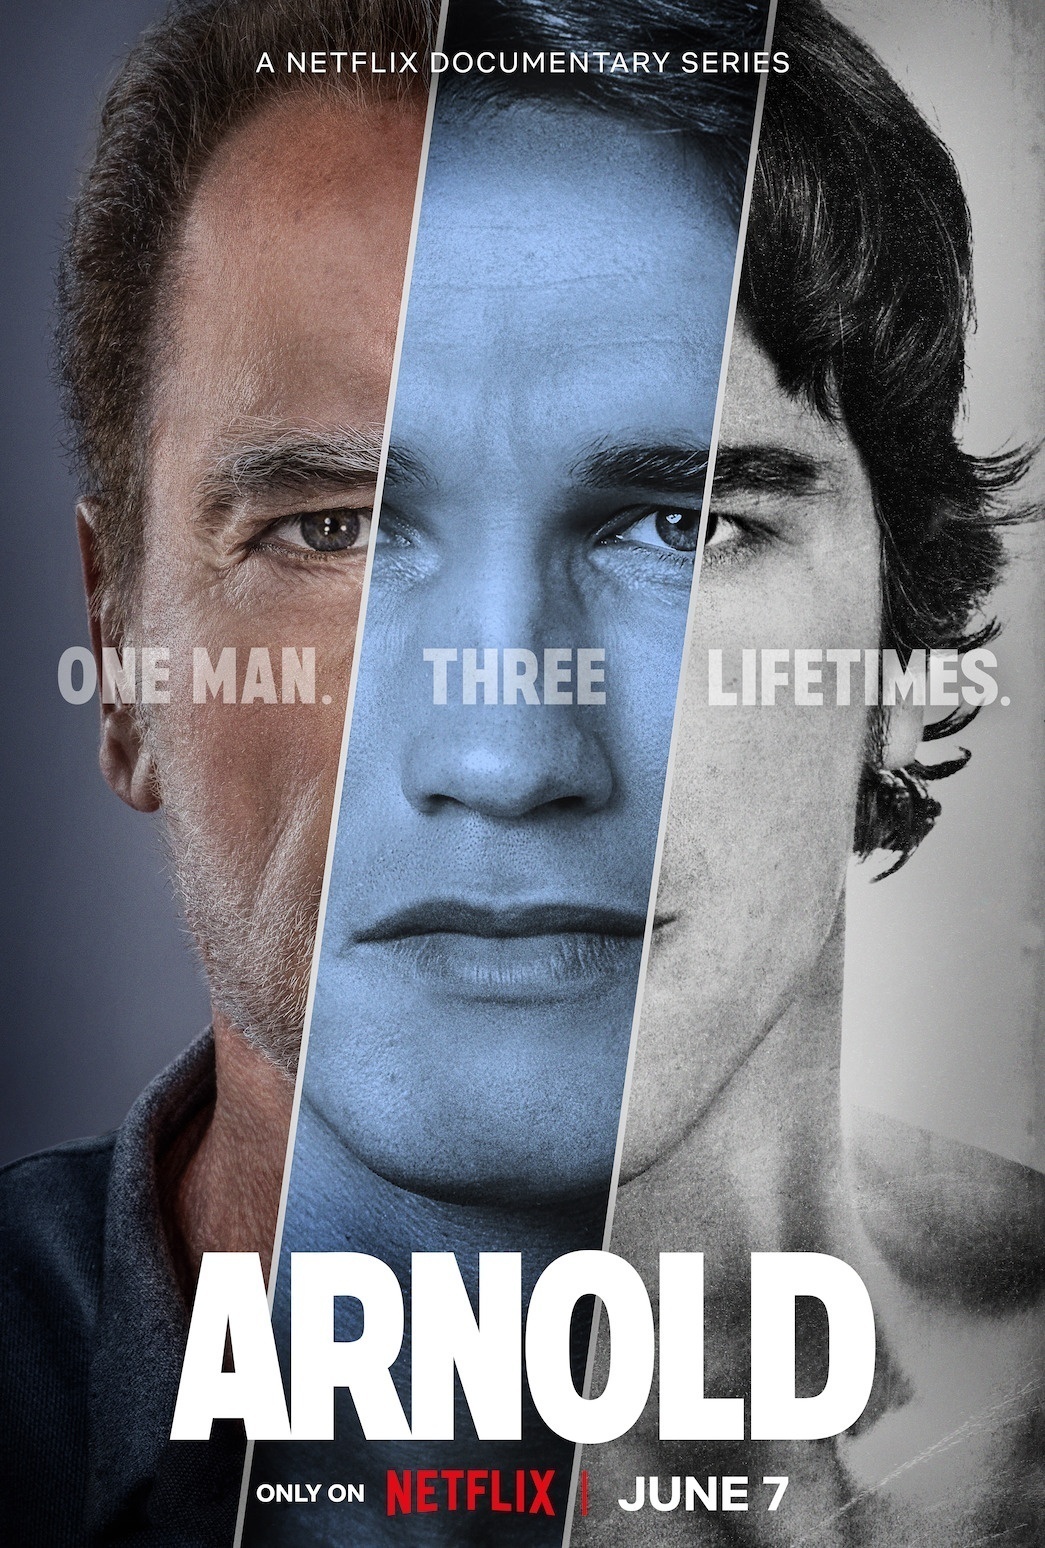 affiche documentaire arnold netflix - Arnold : après Fubar, Netflix consacre une mini-série documentaire à Schwarzenegger en juin (Date de sortie + Bande annonce)